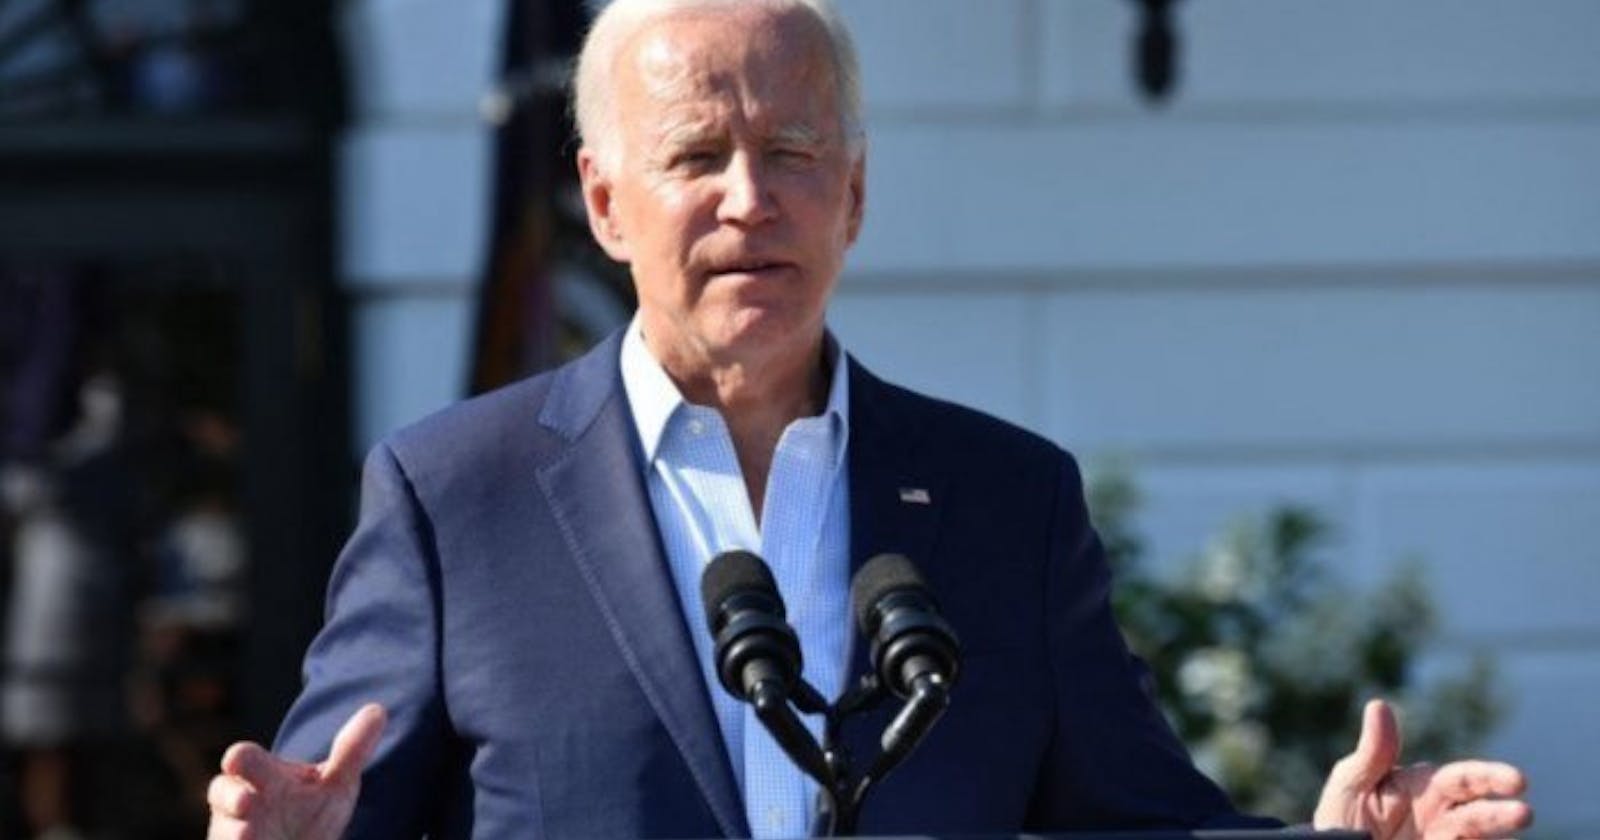 That could be a political headache for Joe Biden amid concerns